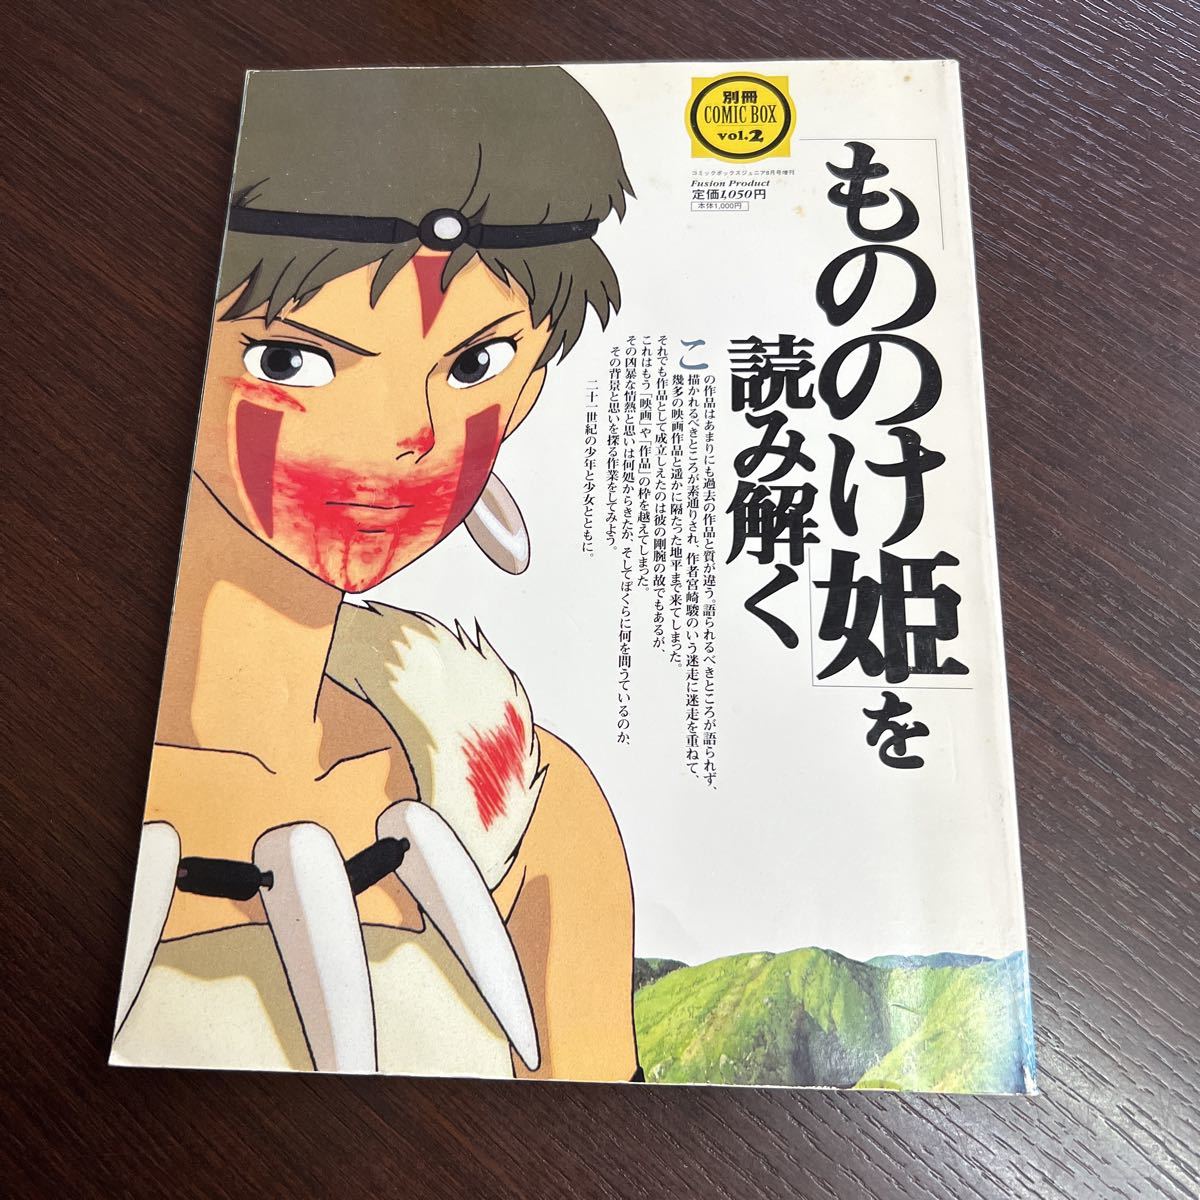 別冊 コミックボックス Vol.2 もののけ姫 を読み解く 1997年 COMIC BOX